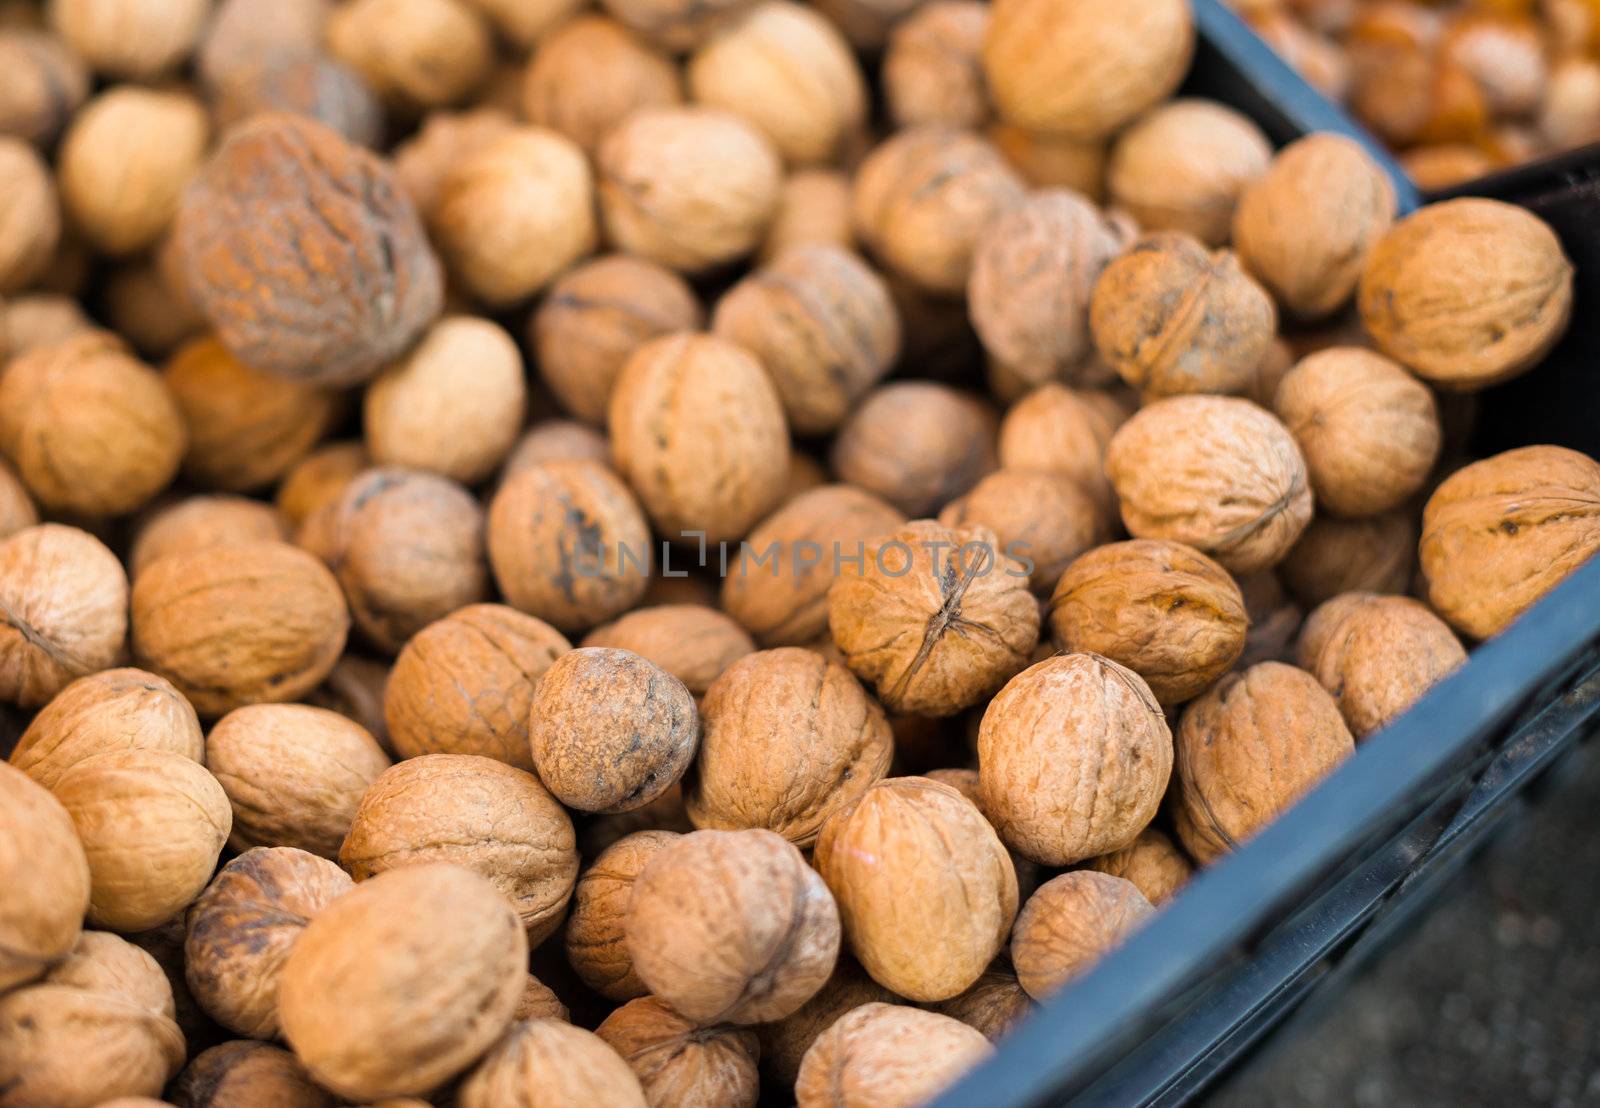 Walnuts in a full bin at a market